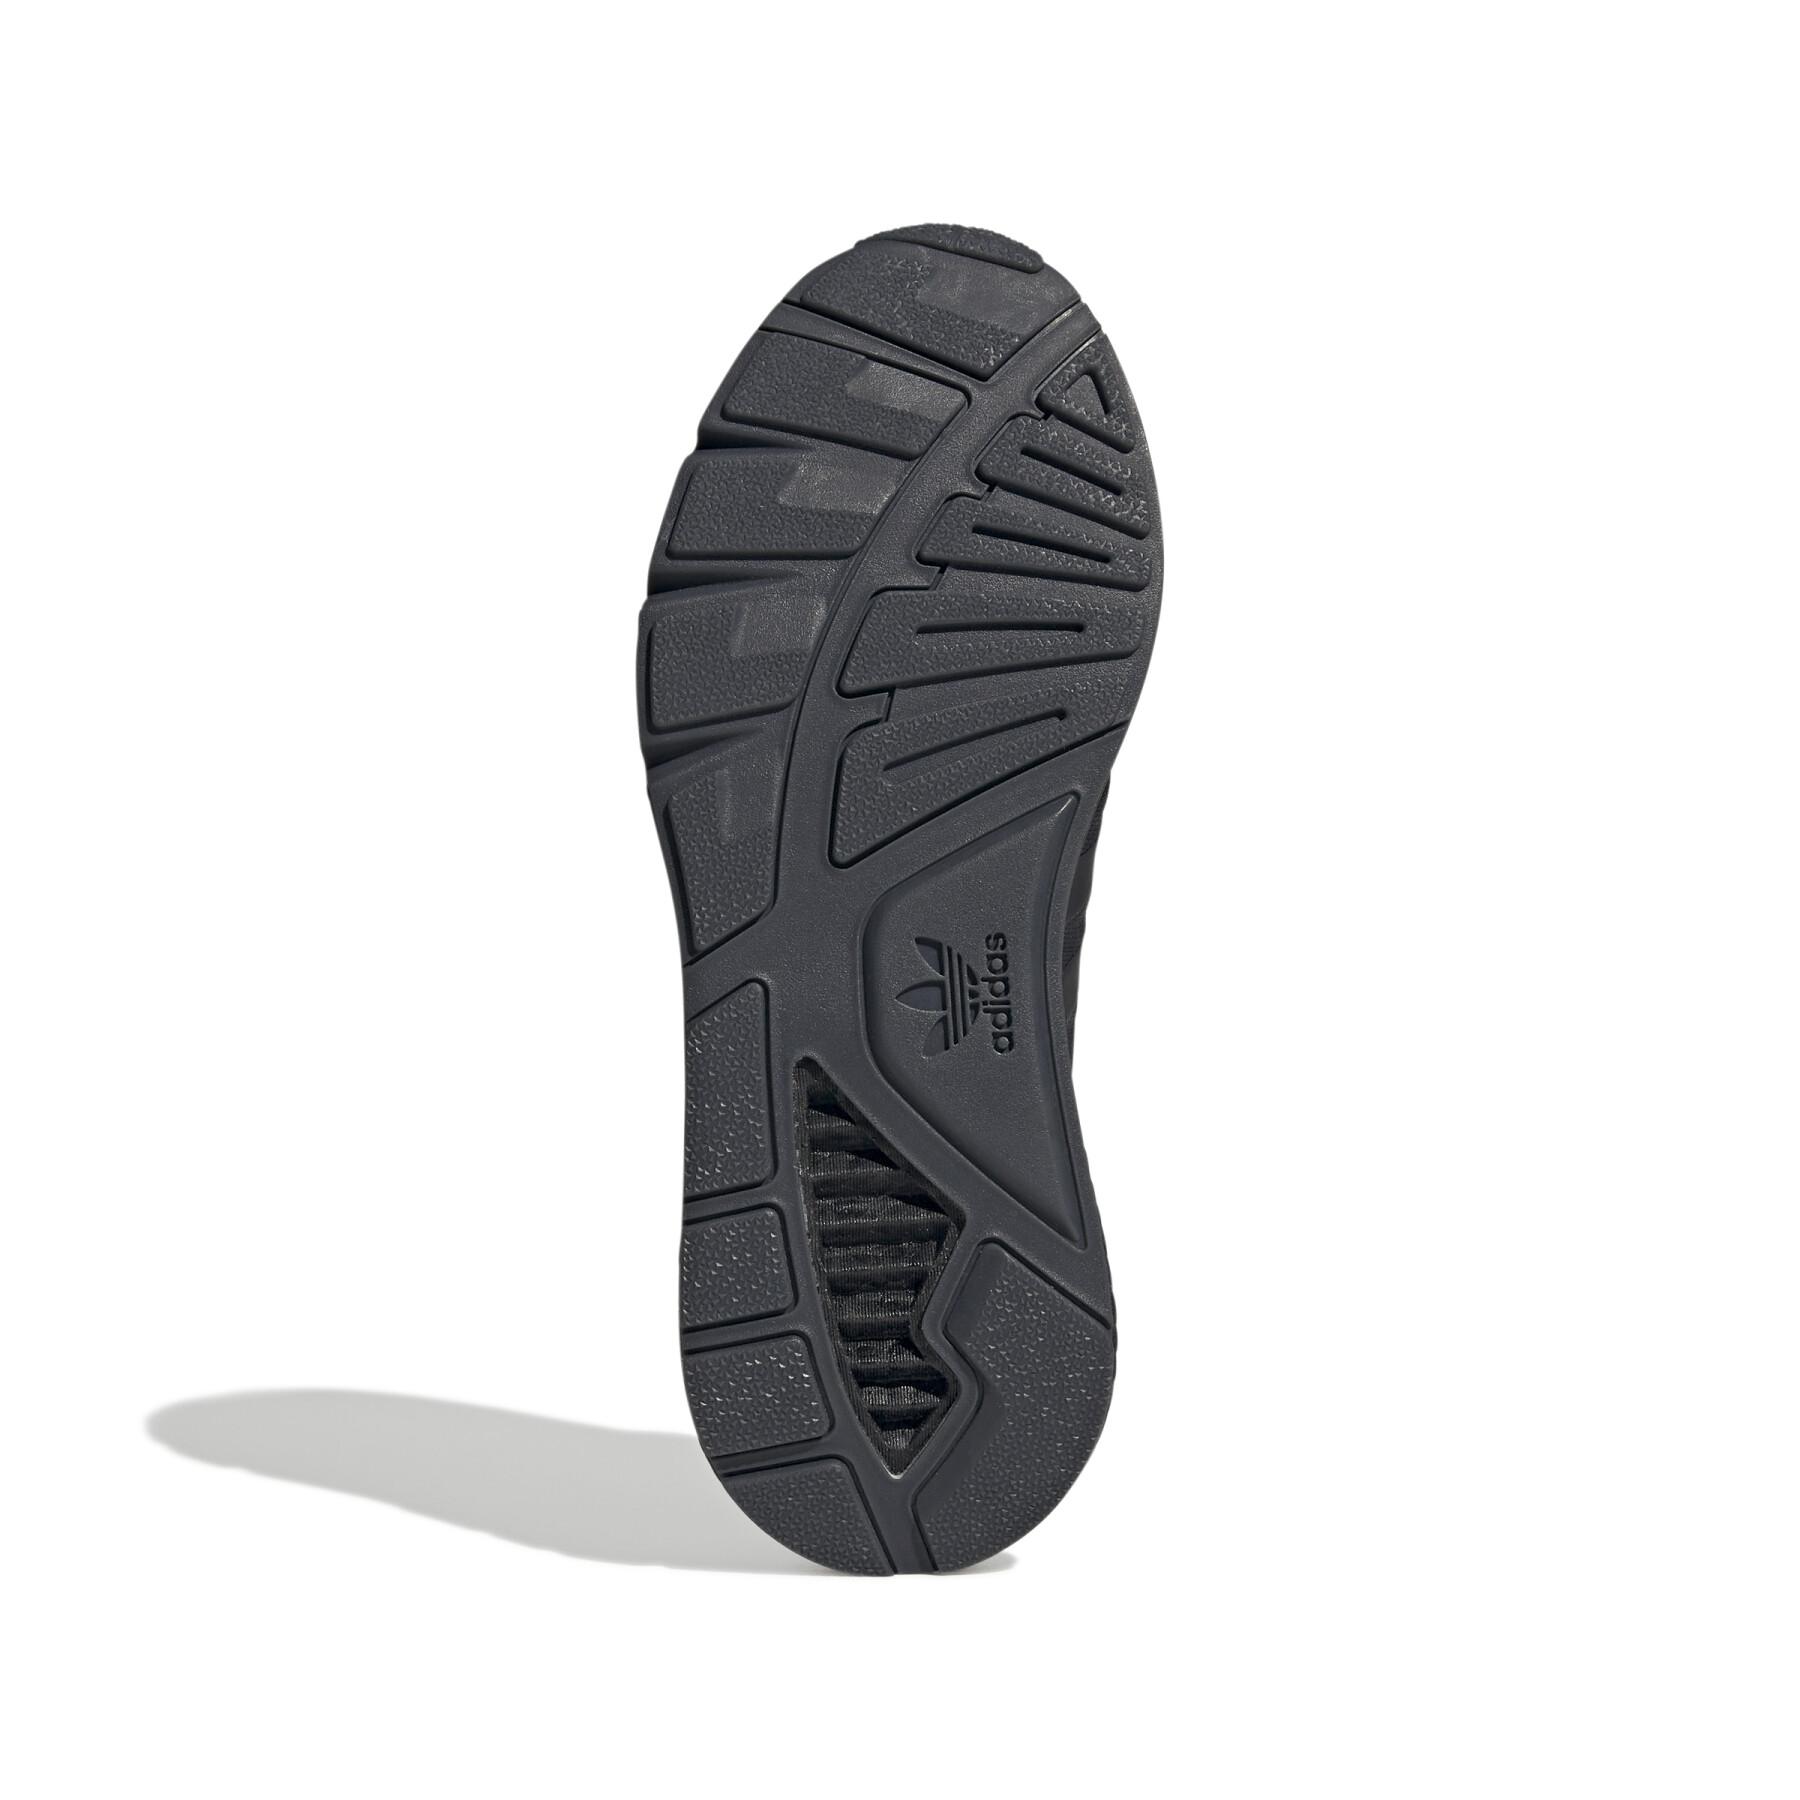 Sneakers adidas Originals ZX 1K Boost